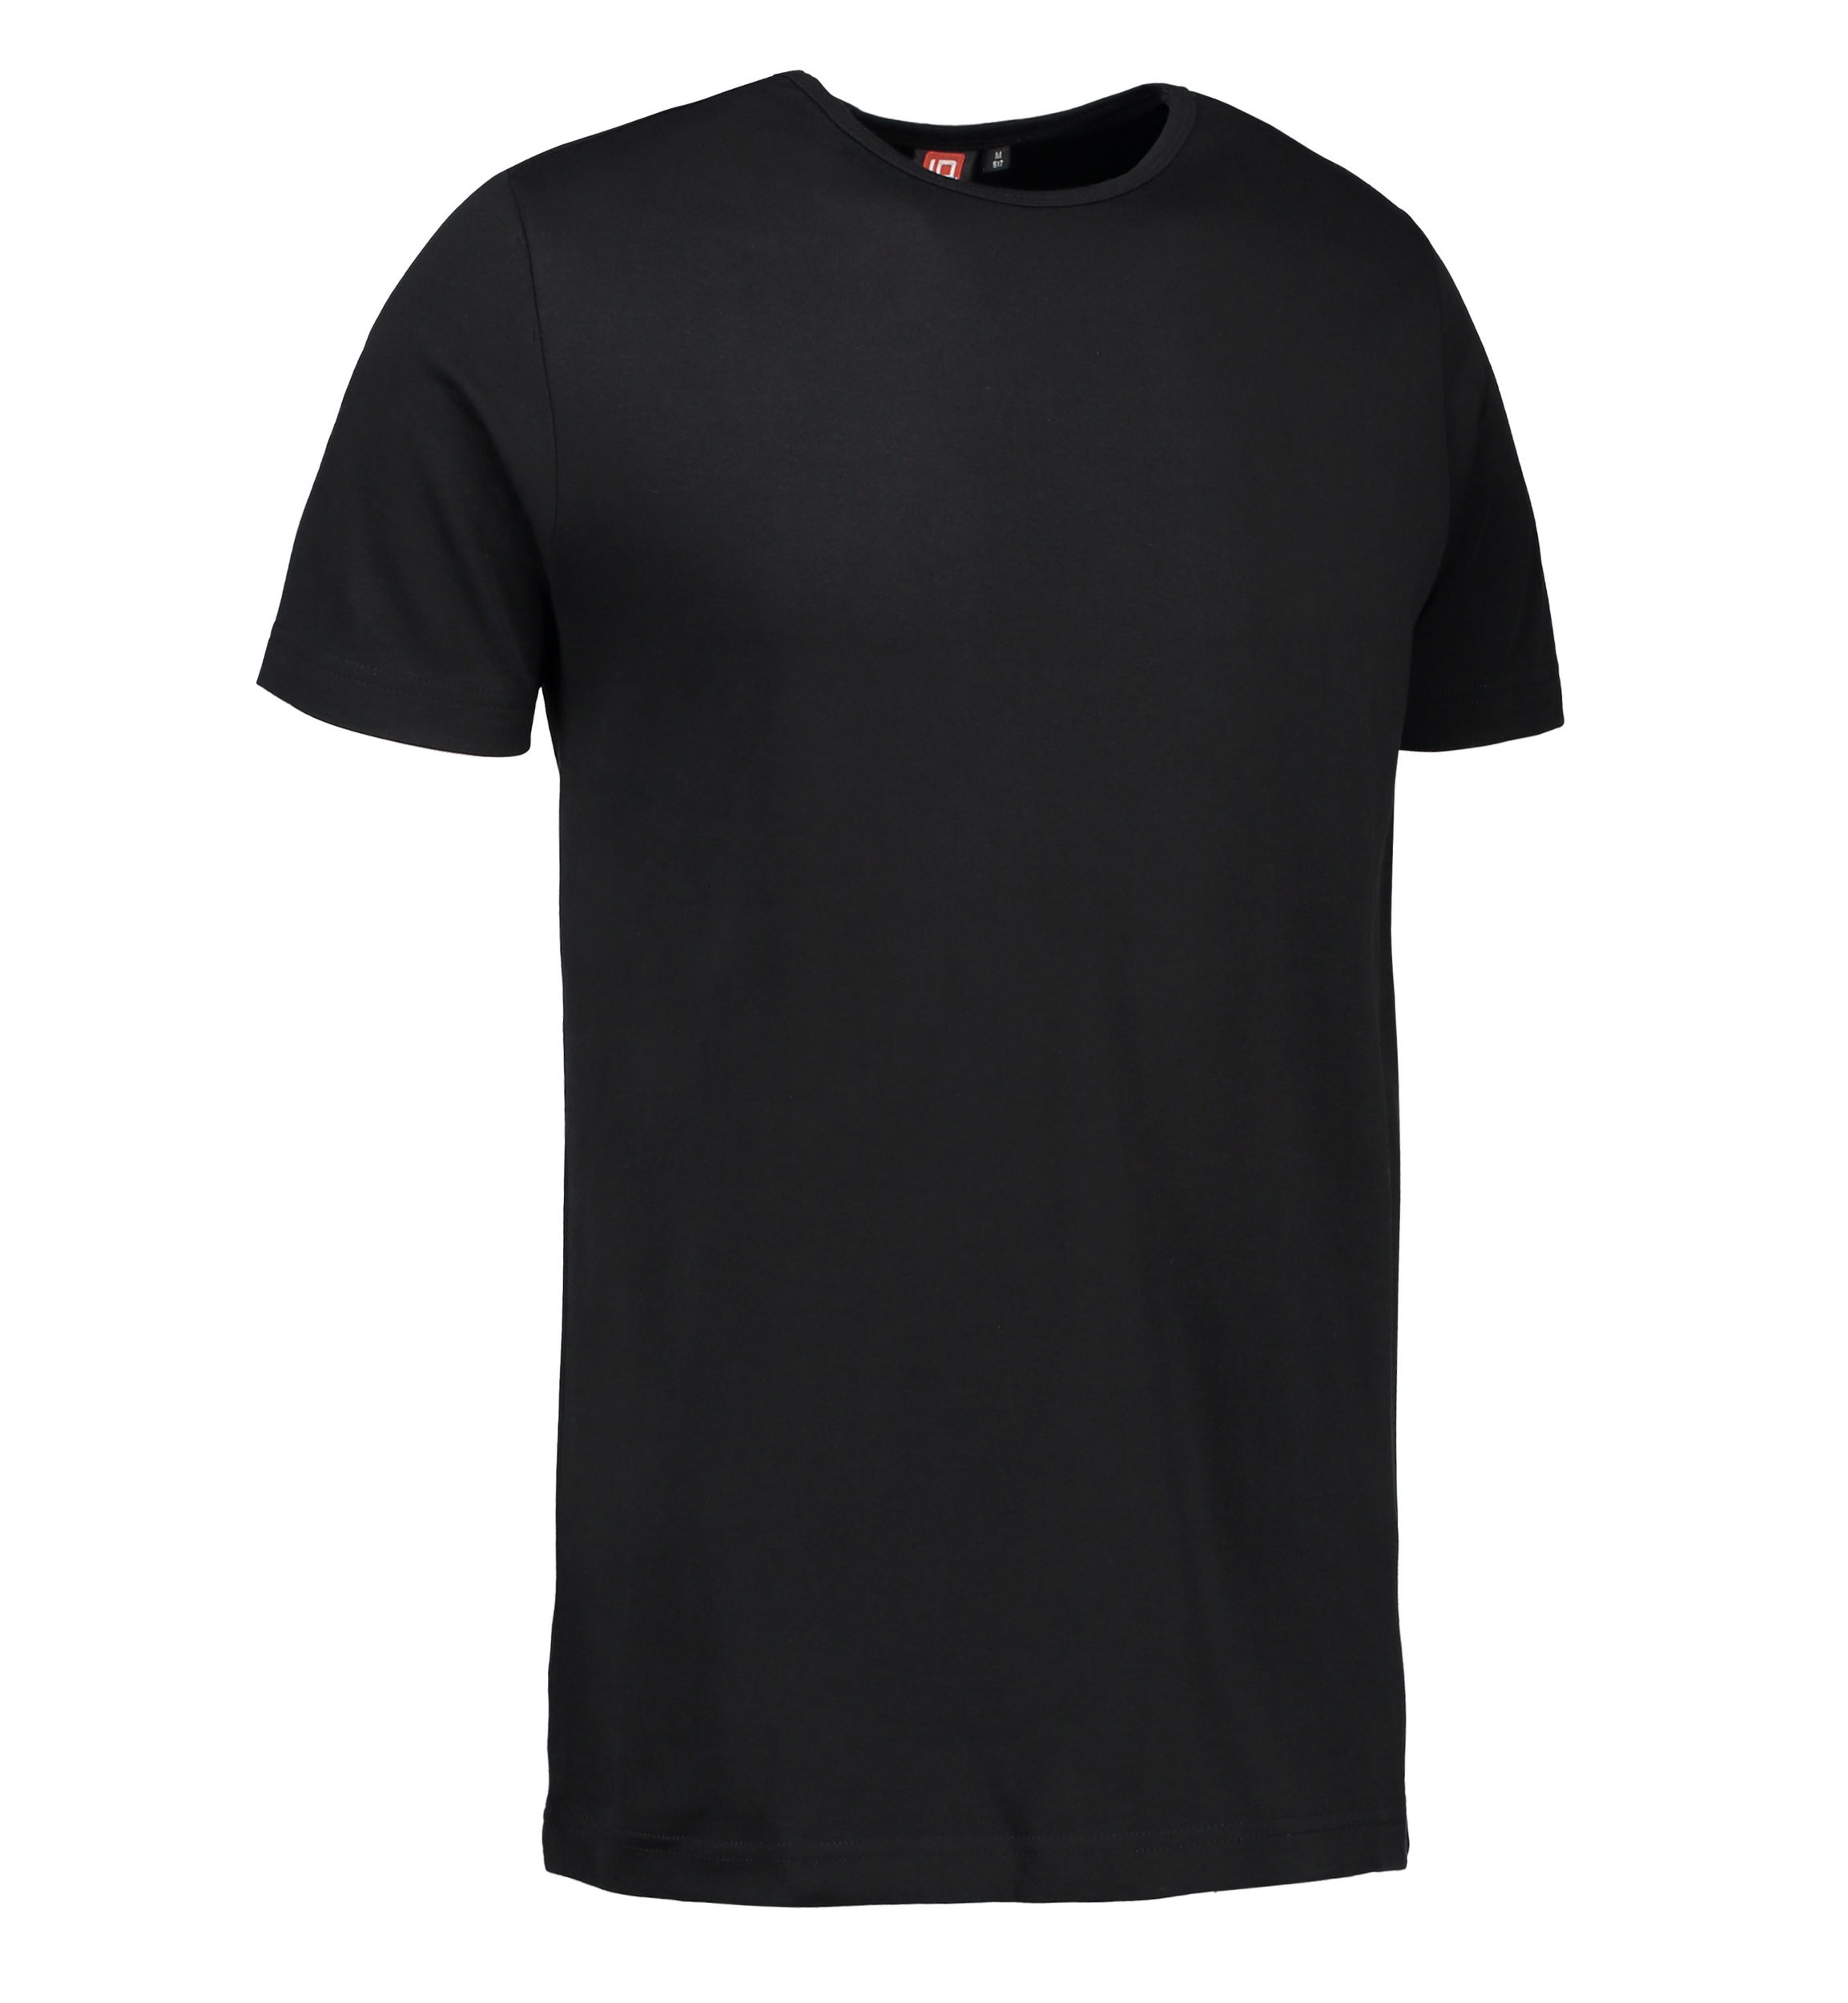 Billede af Sort t-shirt med rund hals til mænd - XL hos Sygeplejebutikken.dk